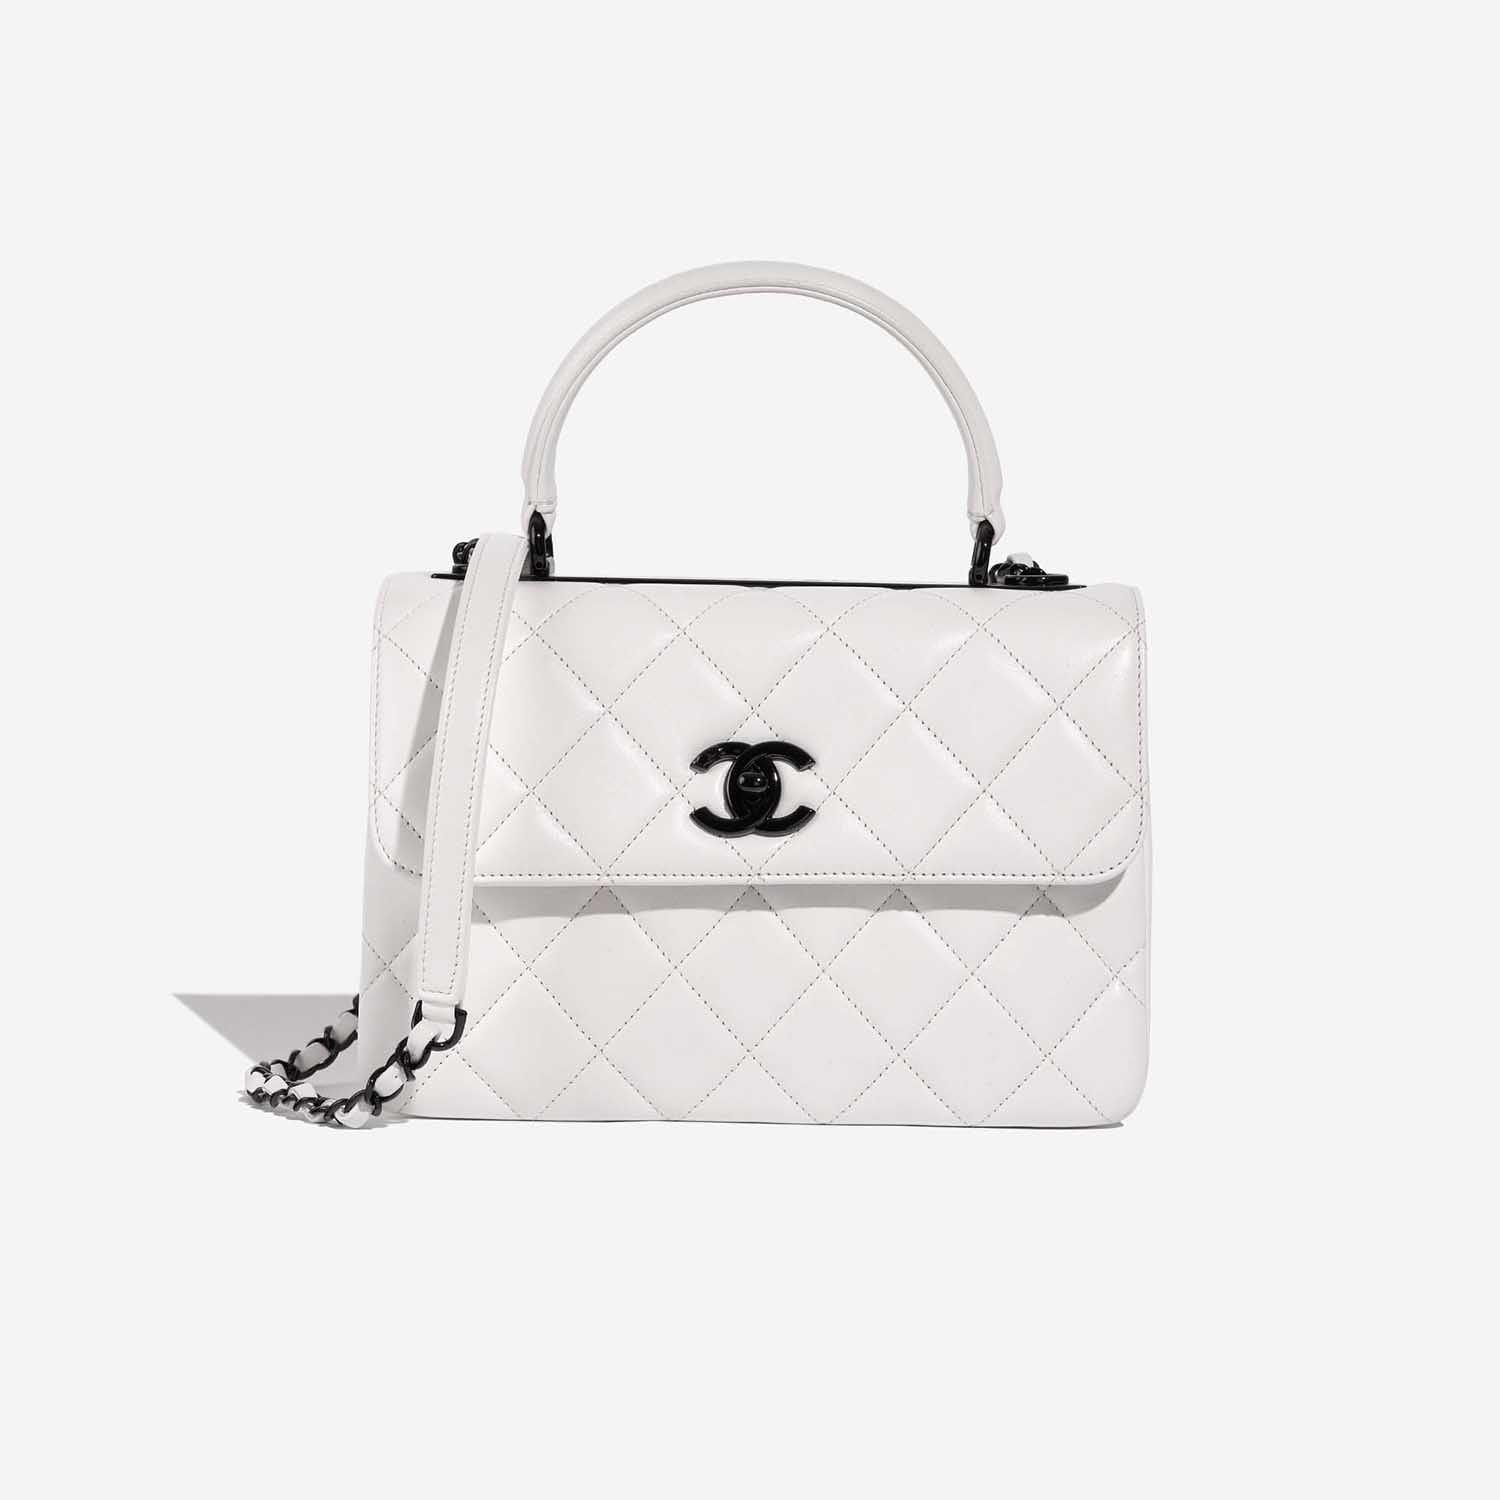 Chanel TimelessHandle Small White Front | Verkaufen Sie Ihre Designer-Tasche auf Saclab.com